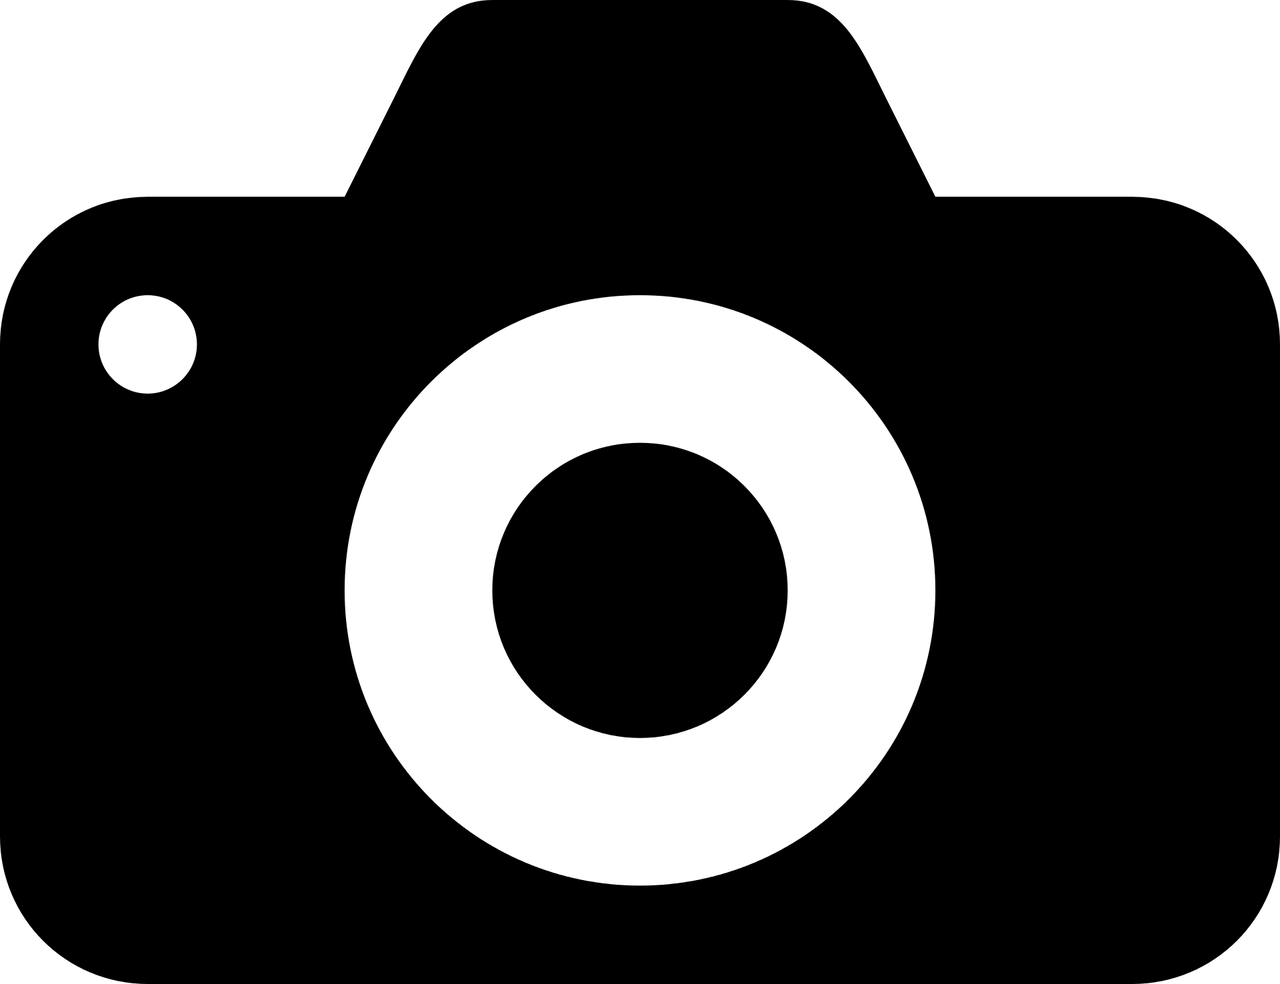 camera icon silhouette